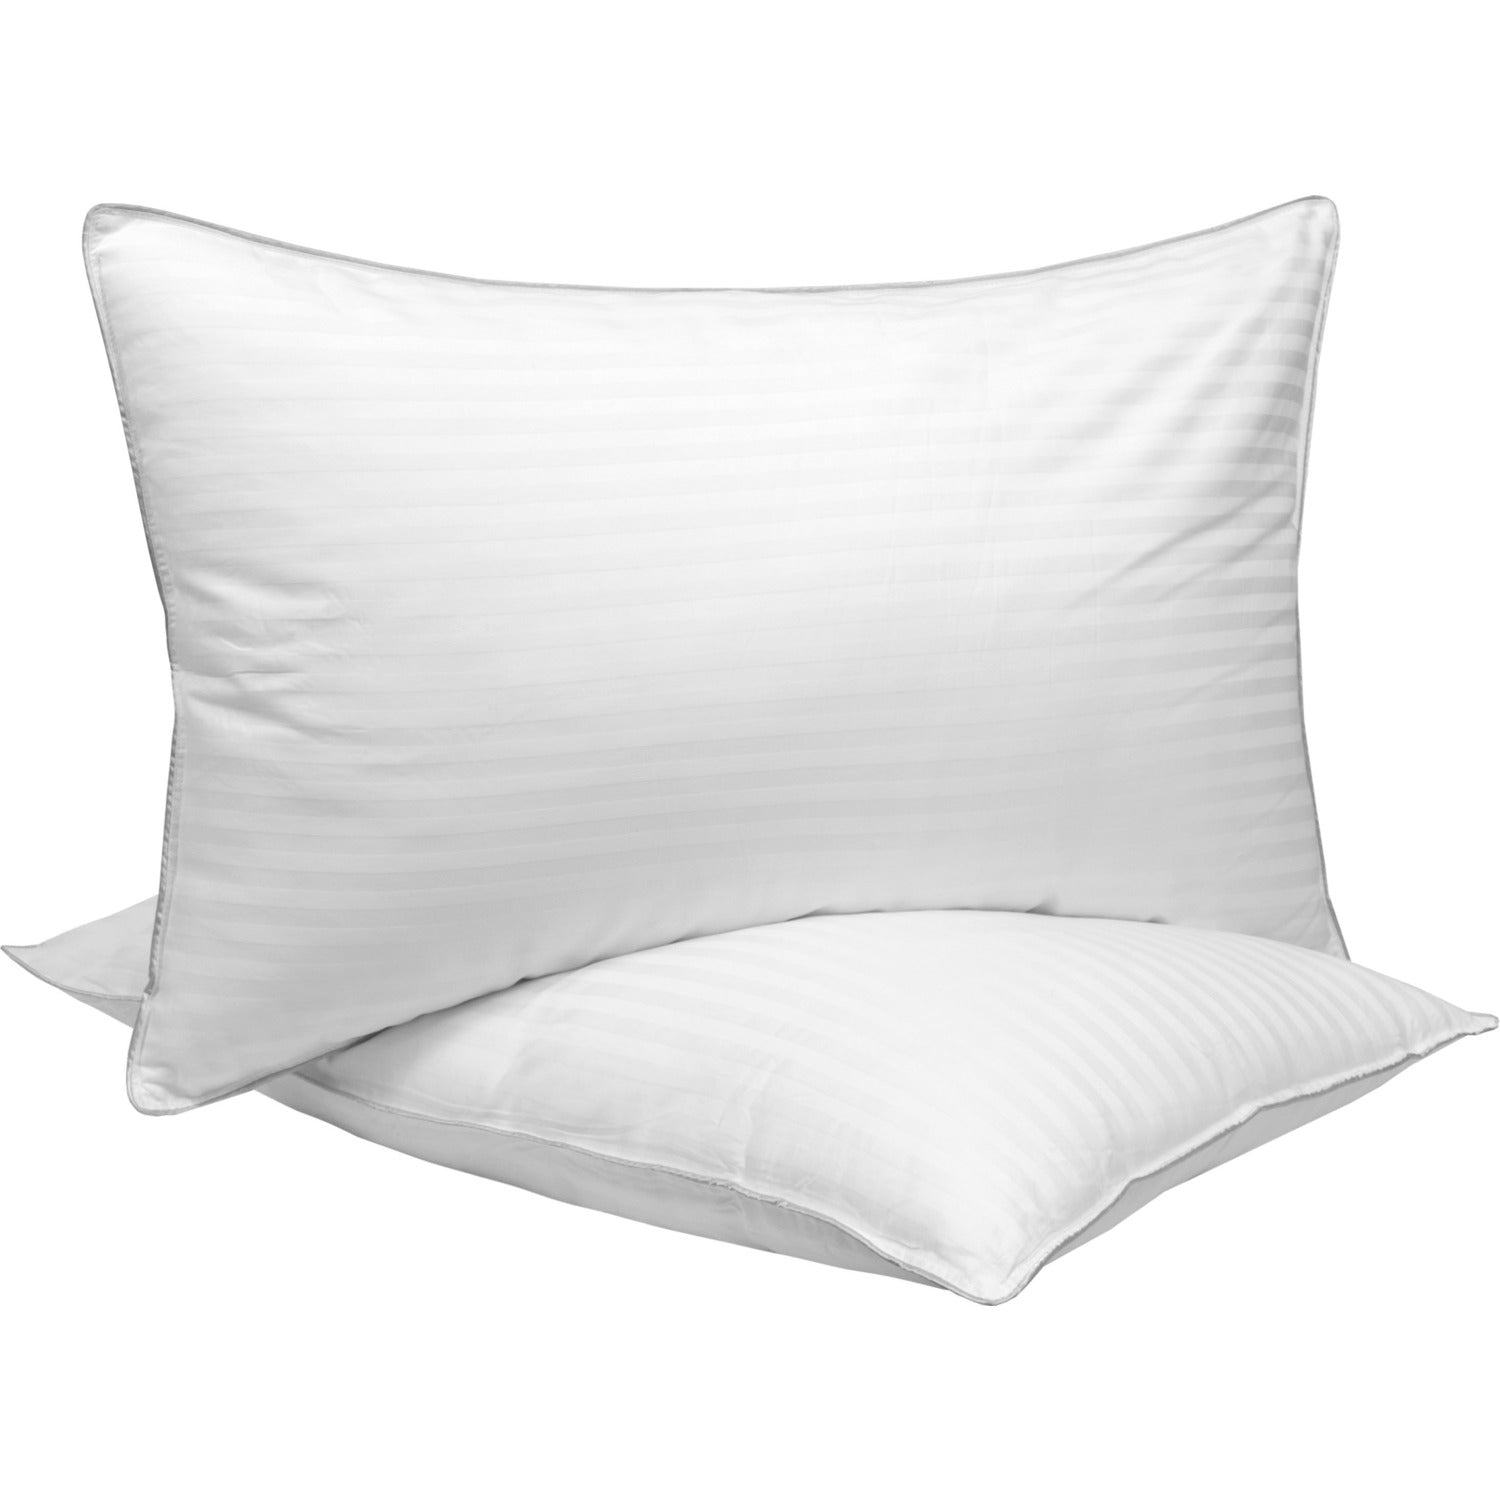 Ball Fiber Dobby Stripe Pillow 2-Pack